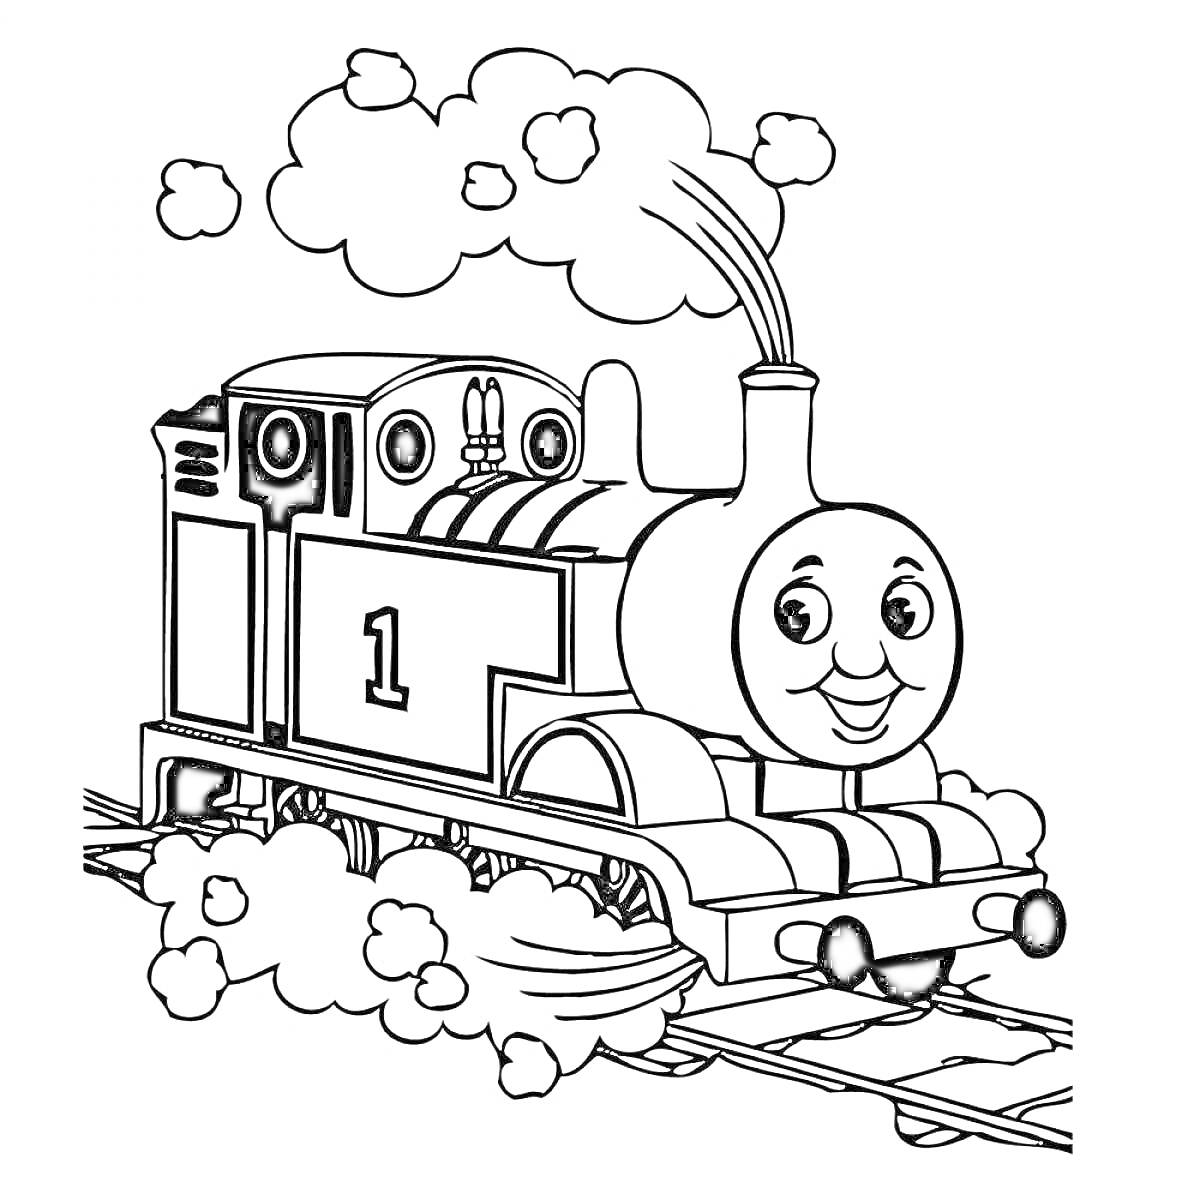 Паровоз Томас с улыбающимся лицом на железнодорожных путях, пар.